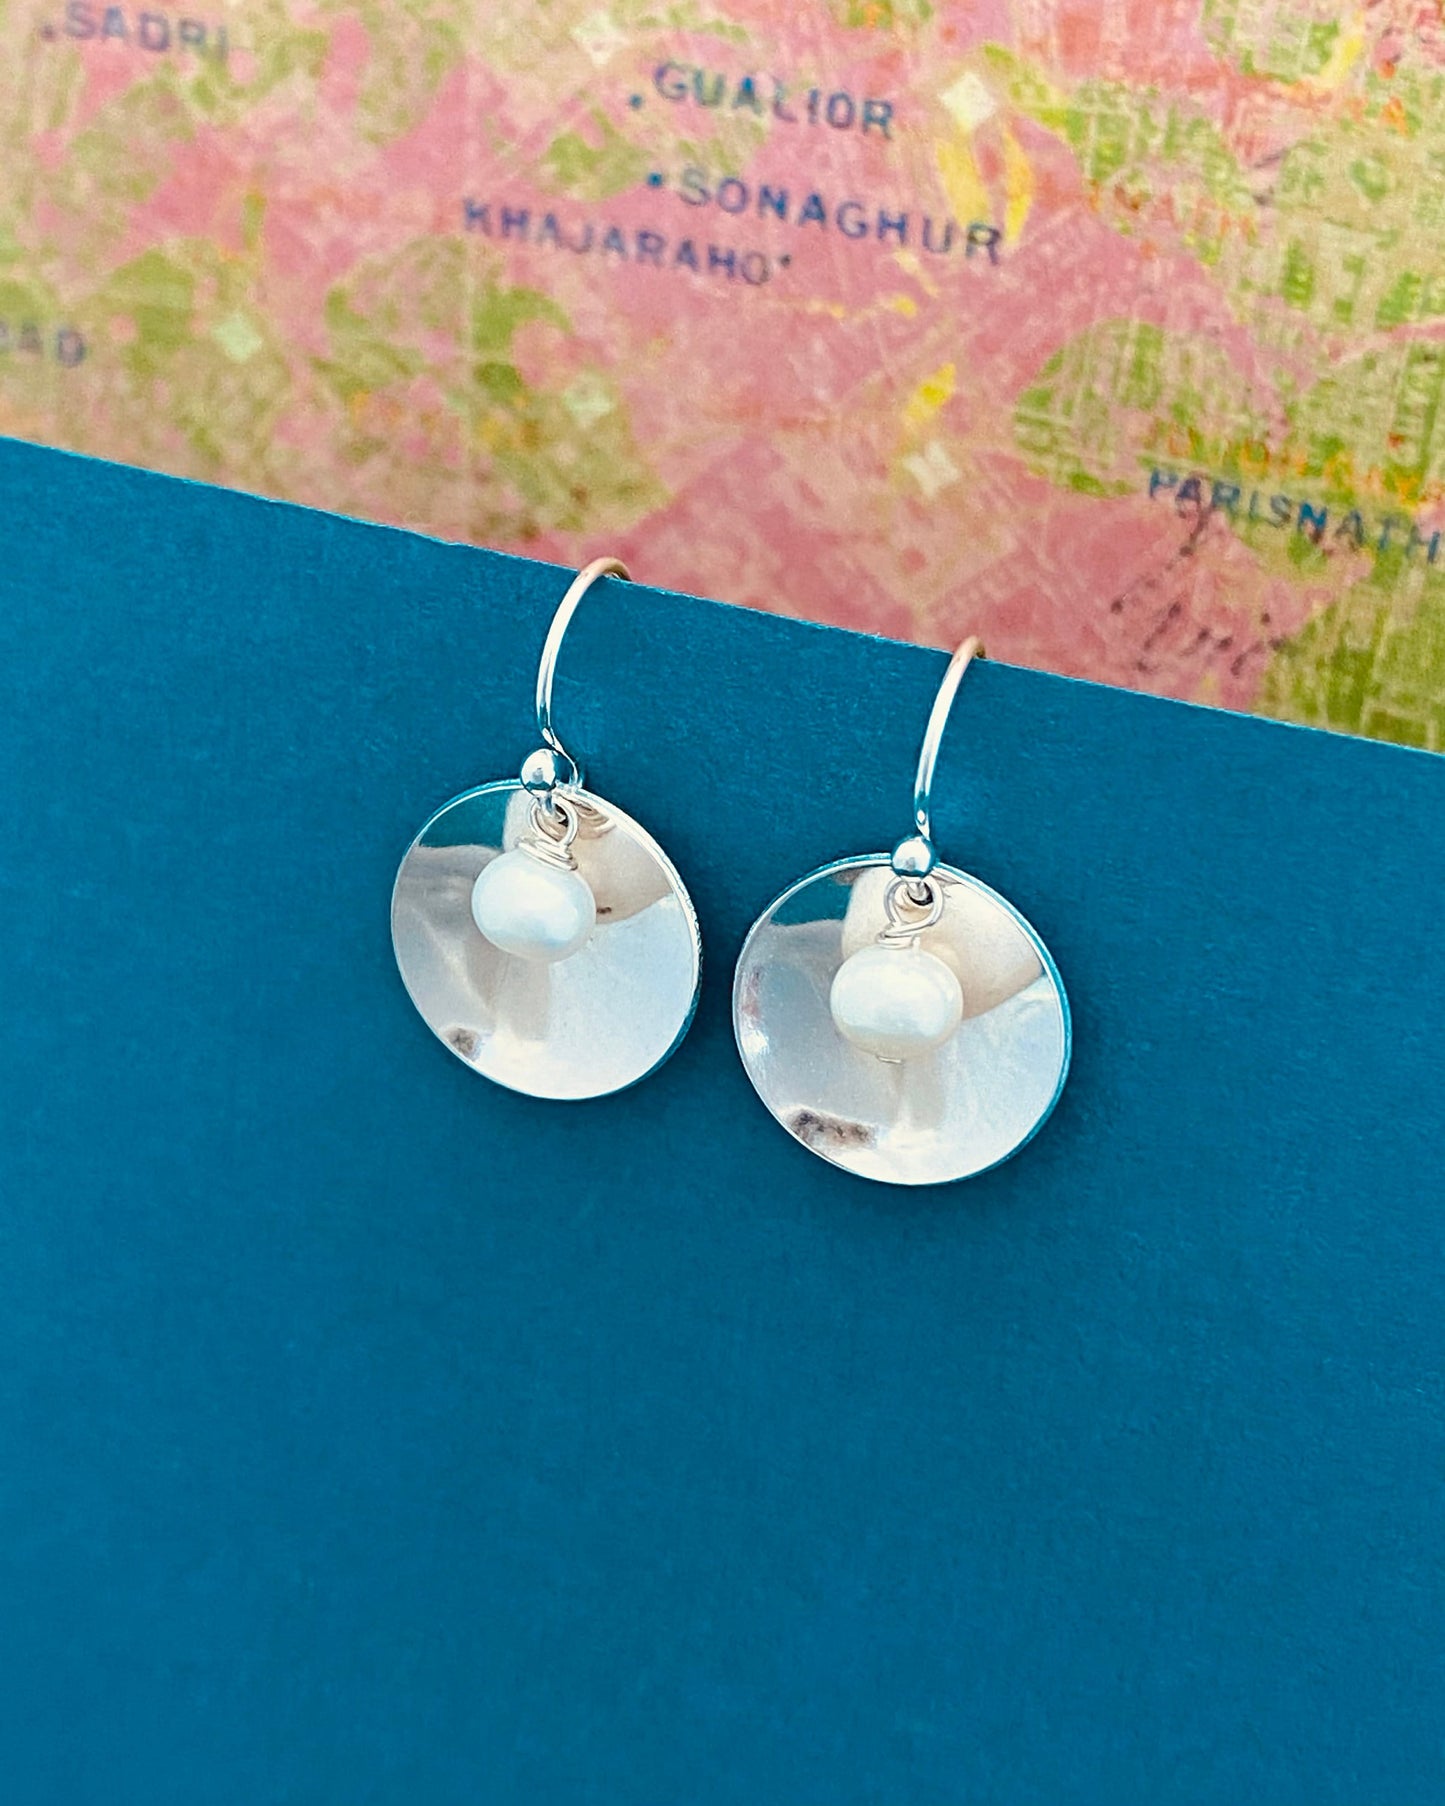 Pearl Disc Earrings, Freshwater Pearl Earrings, White Pearl Earrings, Silver and Pearl Earrings, Bridesmaid Earrings, Sterling Silver Pearls